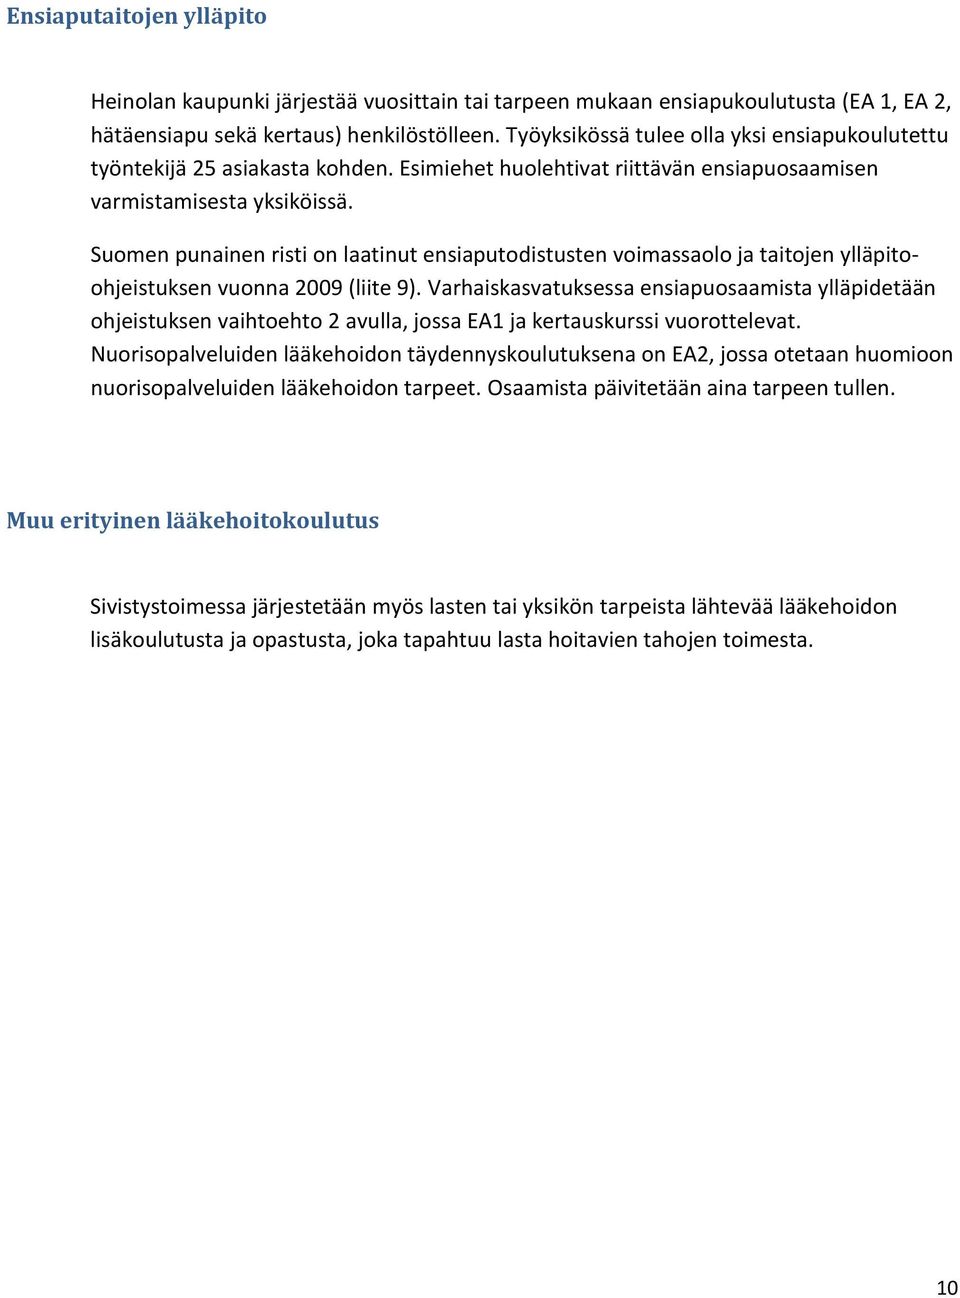 Suomen punainen risti on laatinut ensiaputodistusten voimassaolo ja taitojen ylläpitoohjeistuksen vuonna 2009 (liite 9).